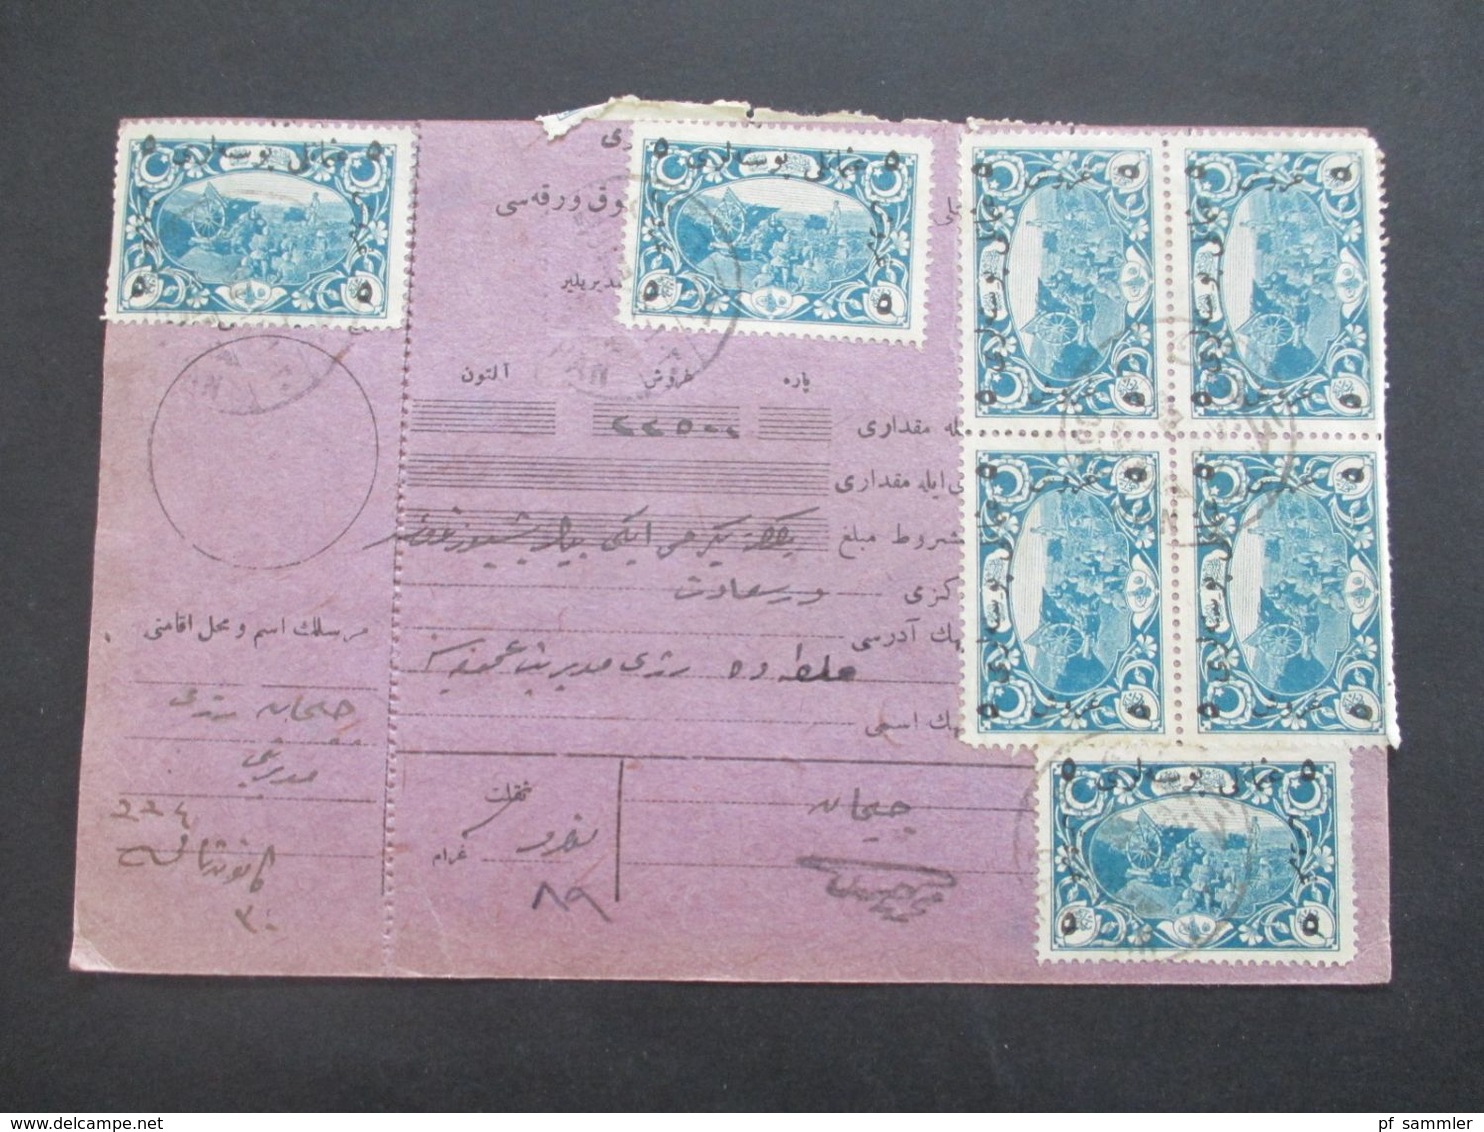 Türkei 1918 Paketkarte mit Nr. 627 (17) auch 4er Block und senkr. 4er Streifen MiF mit Nr. 379